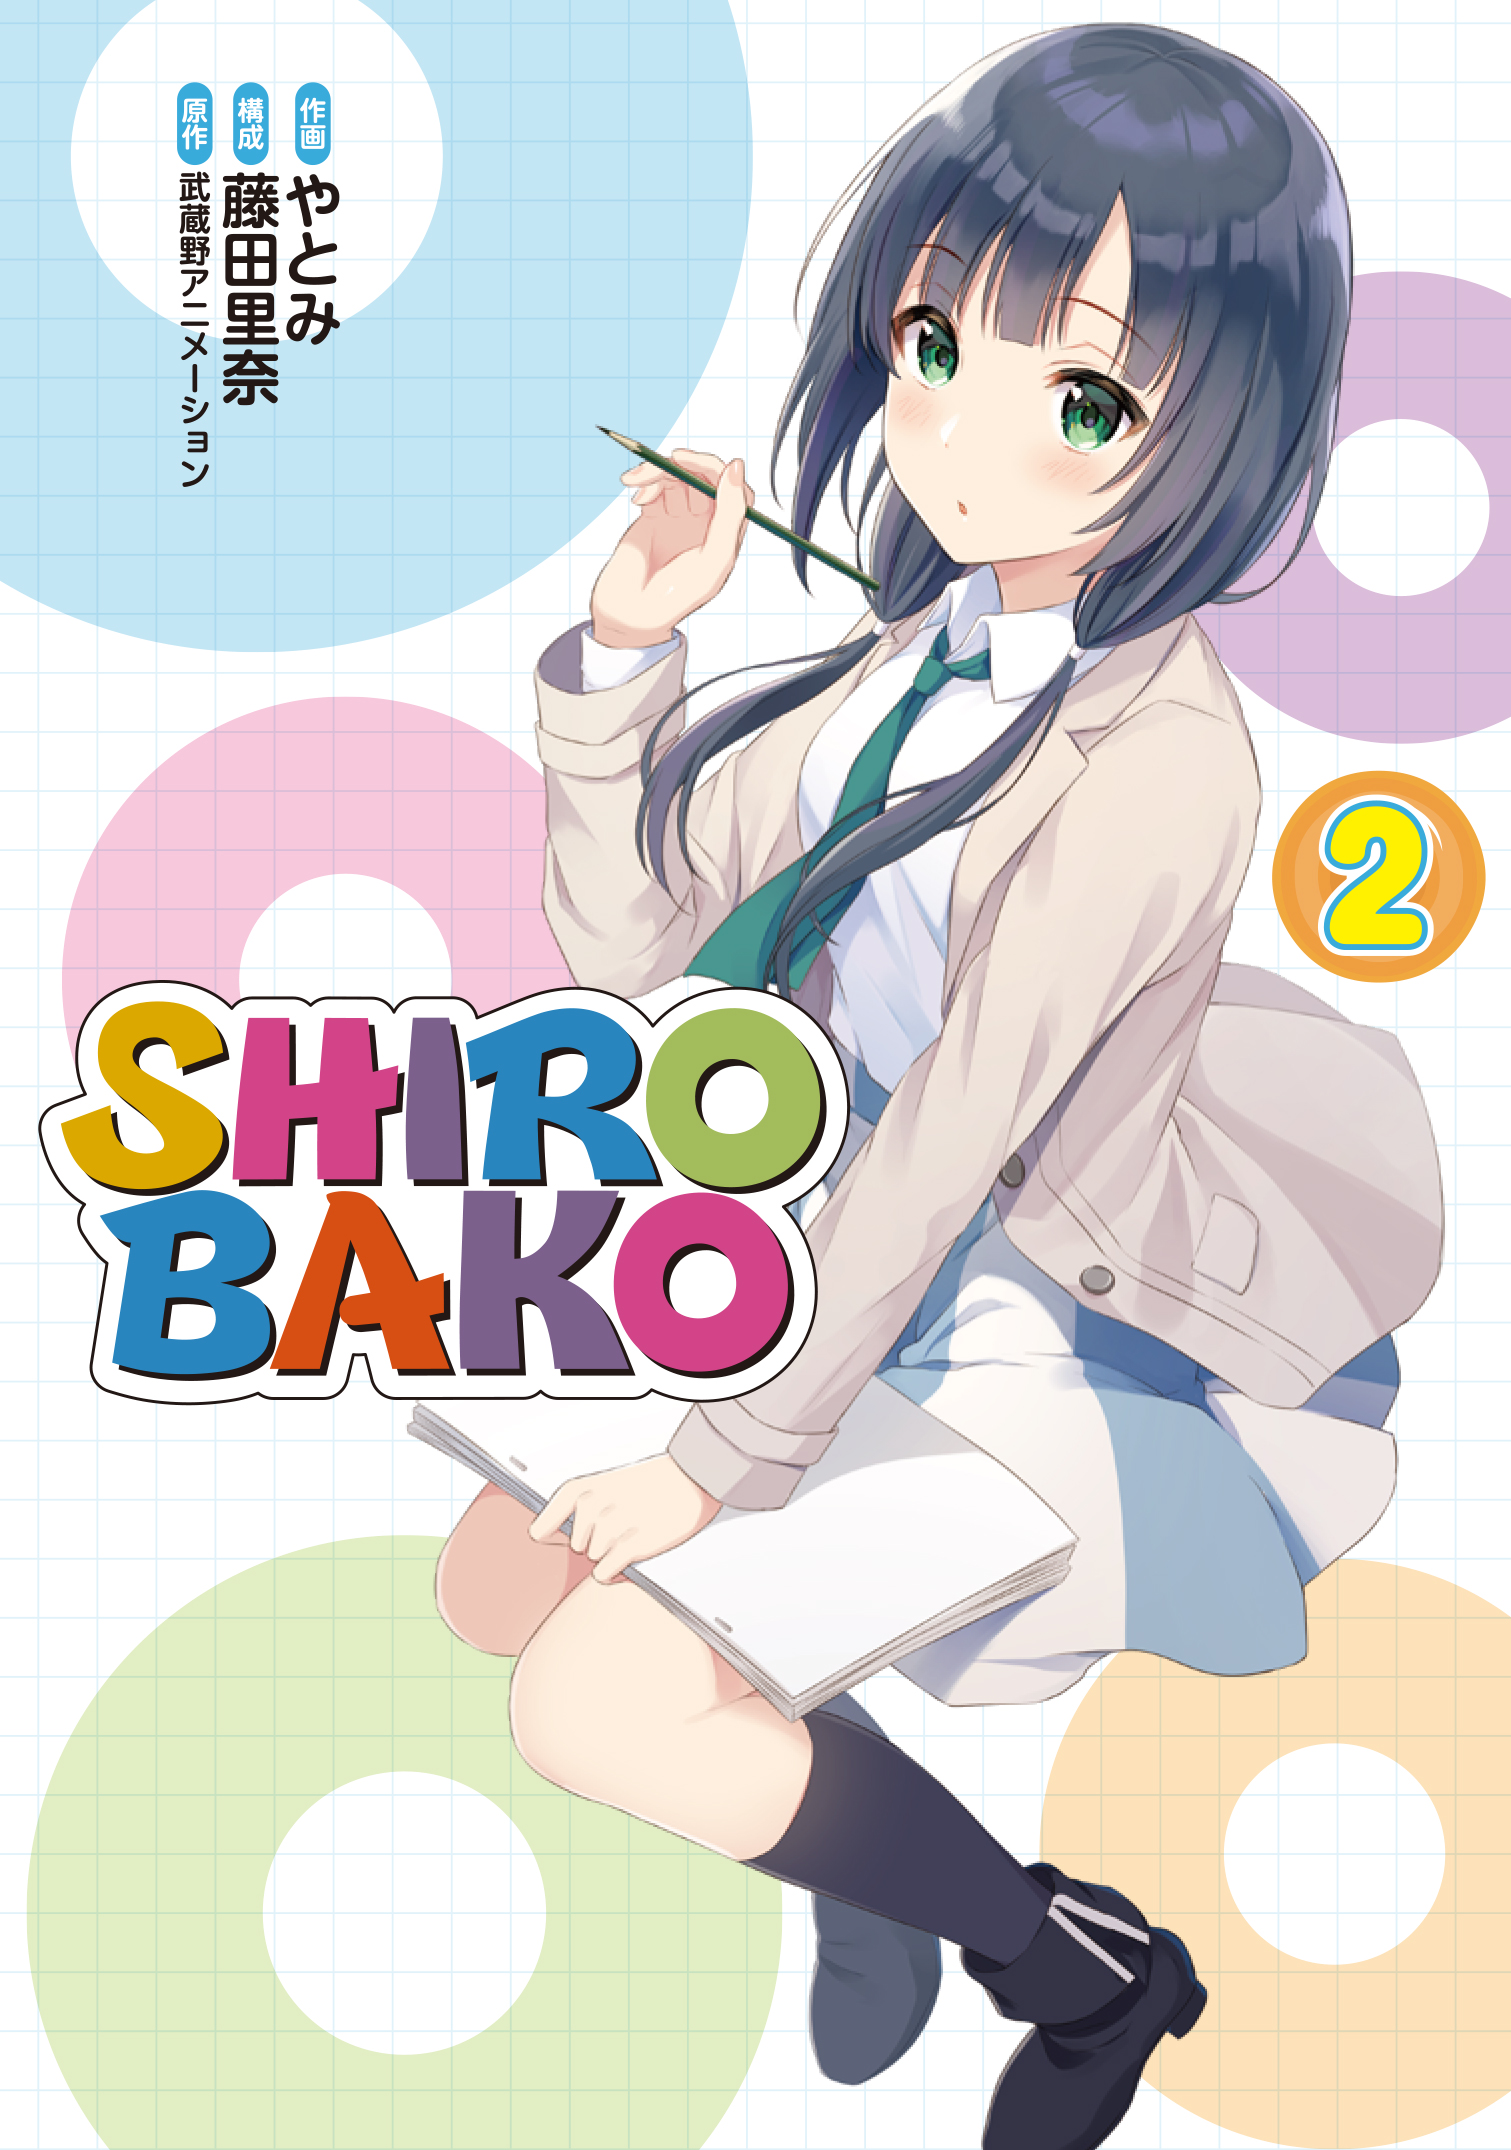 アニメ制作のリアルを描く大人気tvアニメの公式コミカライズ コミックス Shirobako が本日3月8日 月 に発売 株式会社ブシロードのプレスリリース